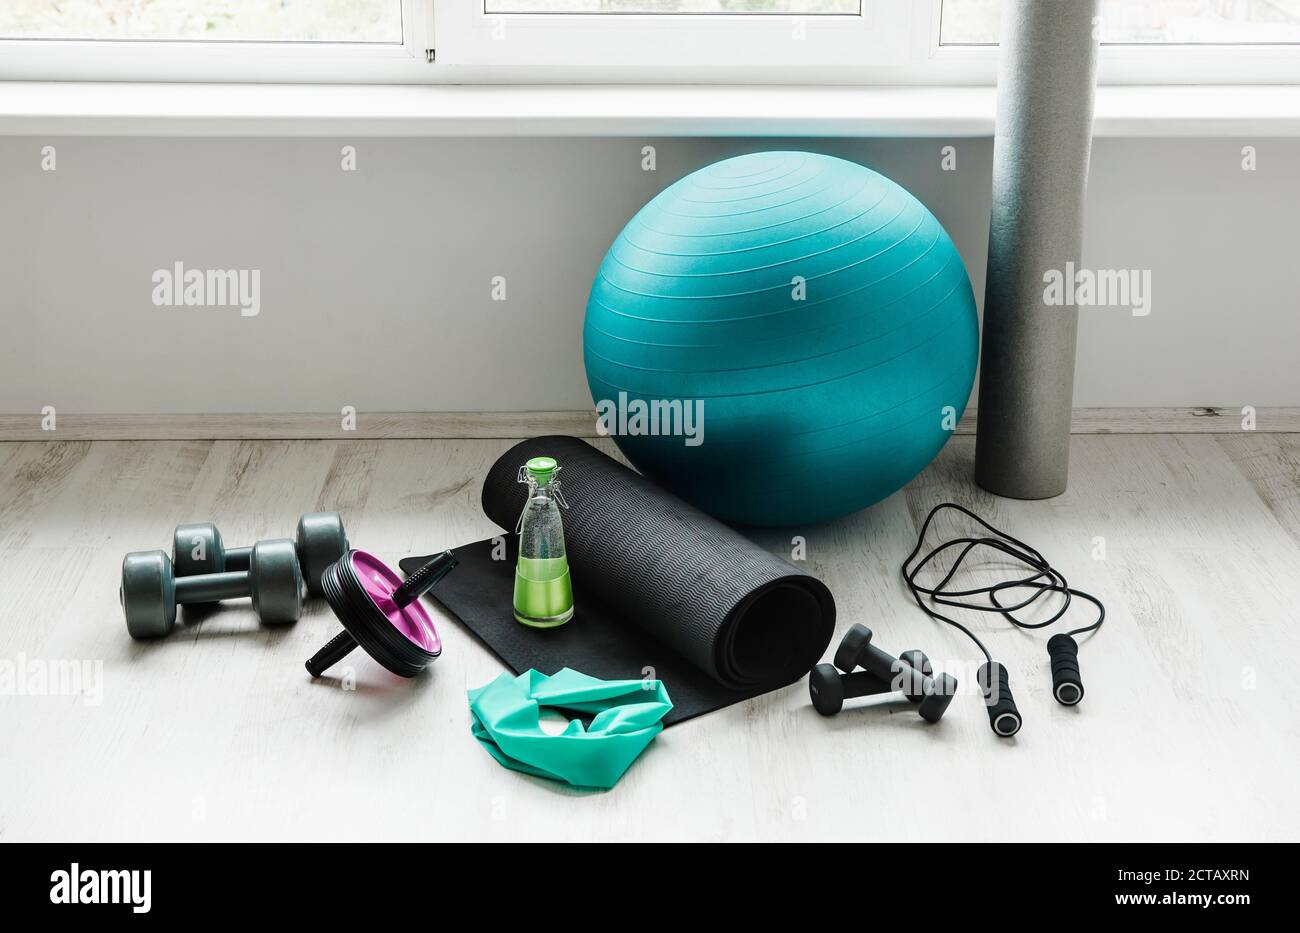 https://c8.alamy.com/compes/2ctaxrn/sala-vacia-blanca-y-luminosa-con-accesorios-para-hacer-ejercicio-en-casa-balon-de-yoga-banda-de-latex-para-ejercicios-de-resistencia-rodillo-de-espuma-pesas-cuerda-de-salto-wa-2ctaxrn.jpg